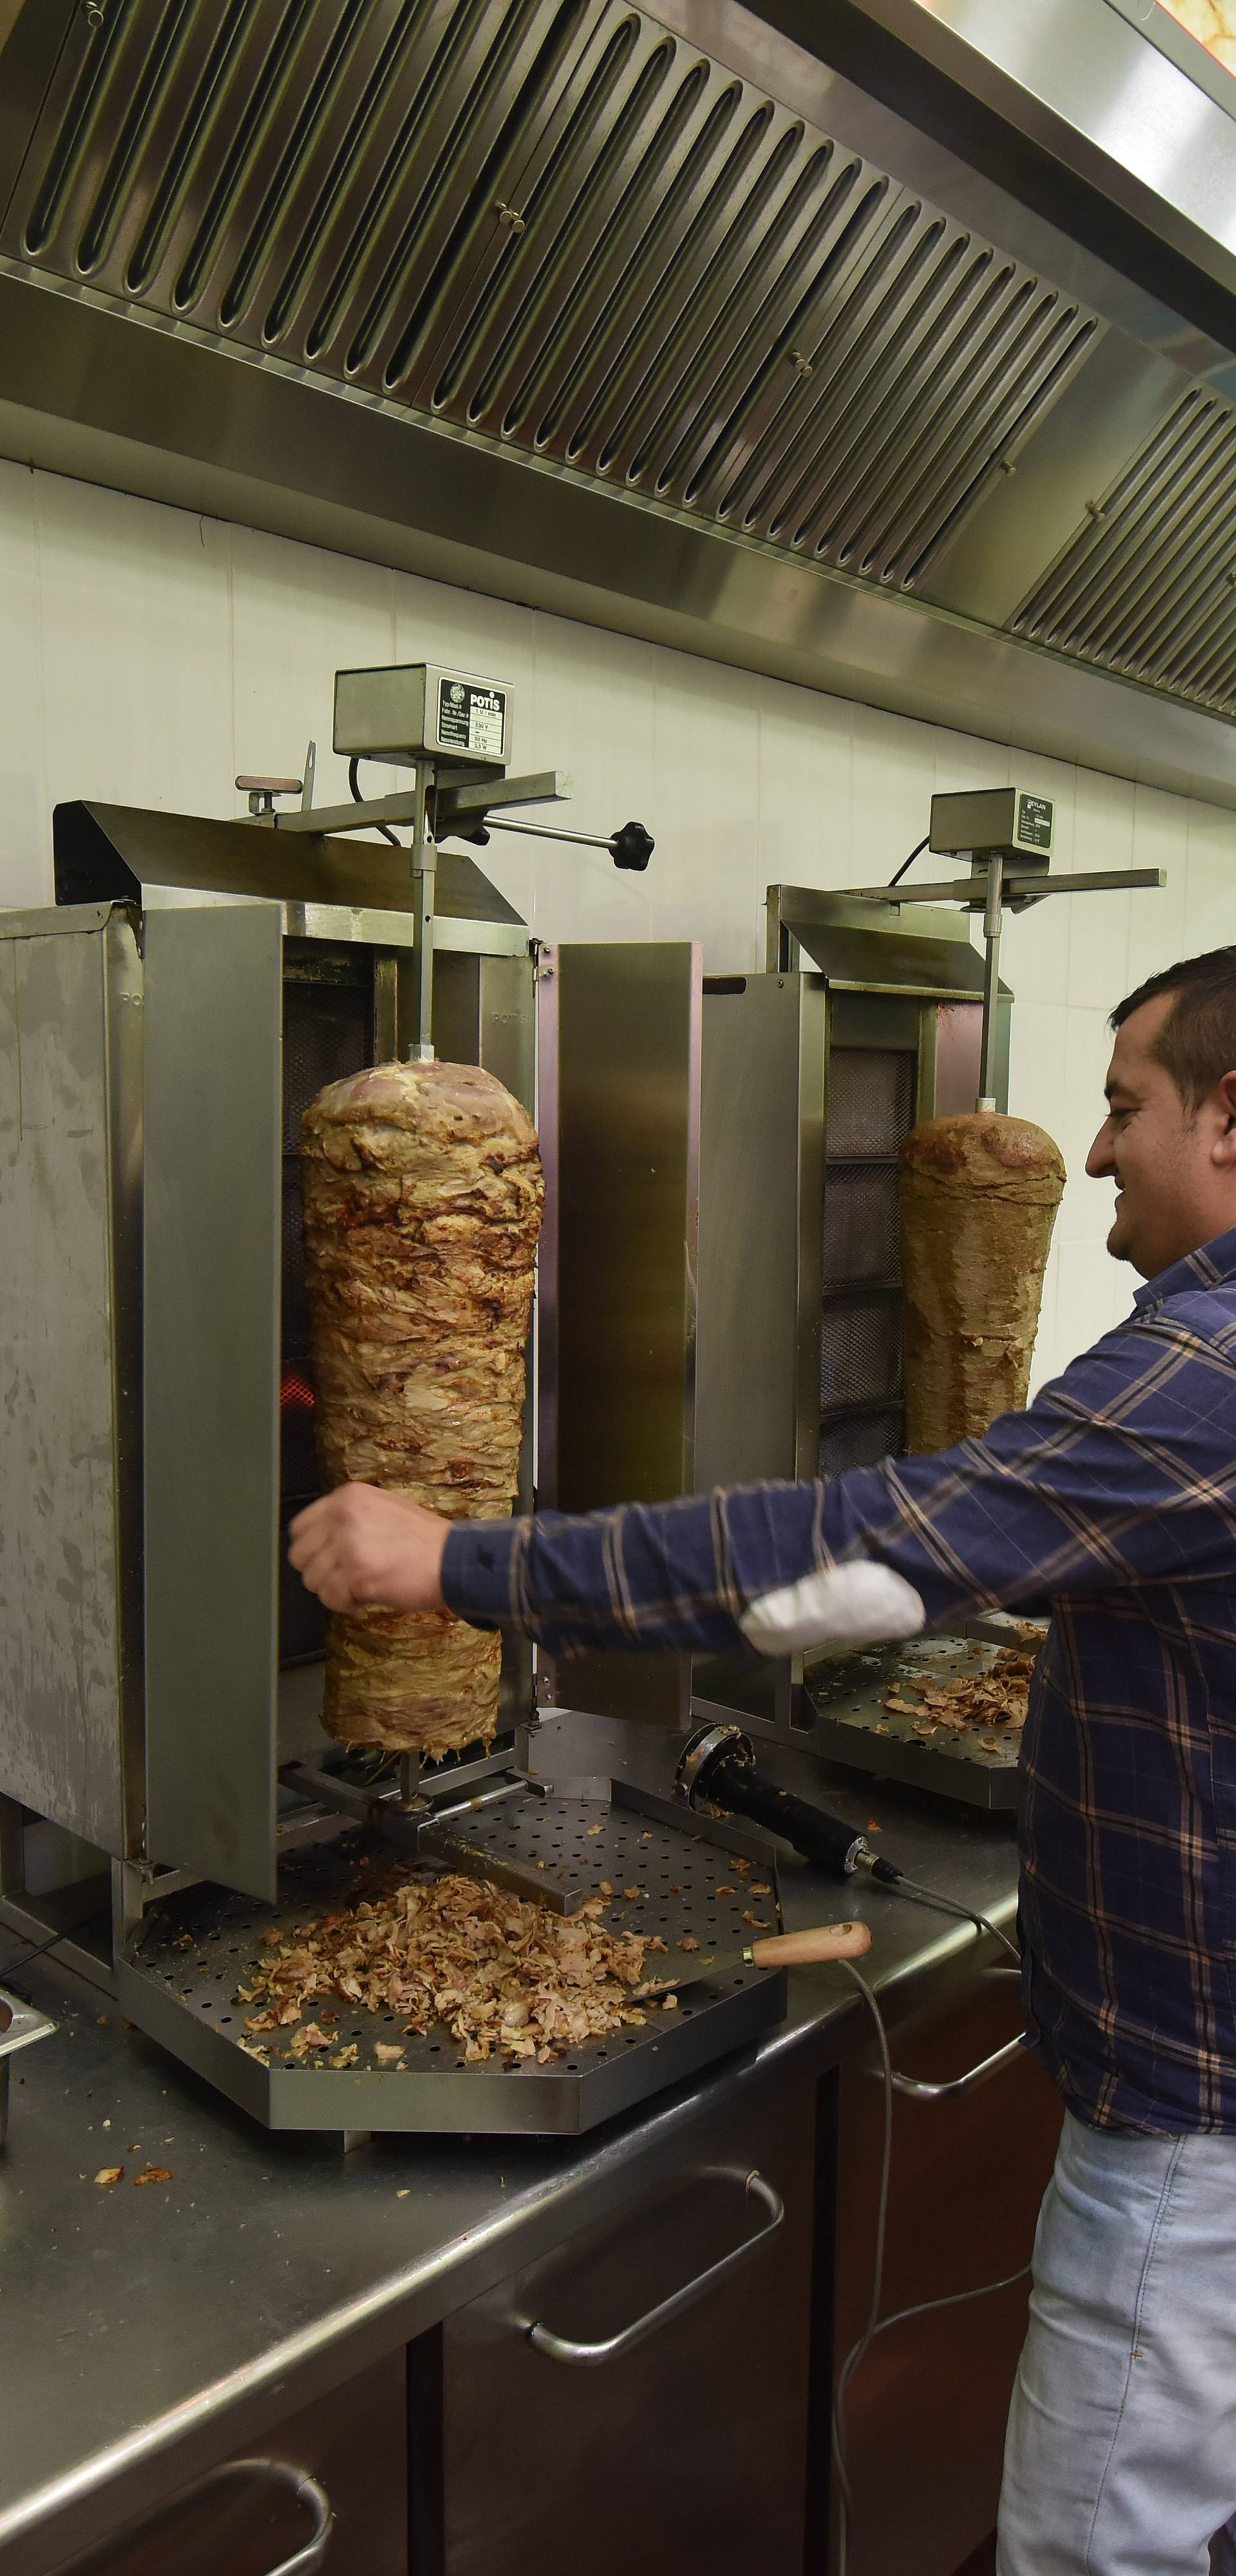 'Još ima dobrih ljudi': Otvorio je lokal pa sve častio kebabom